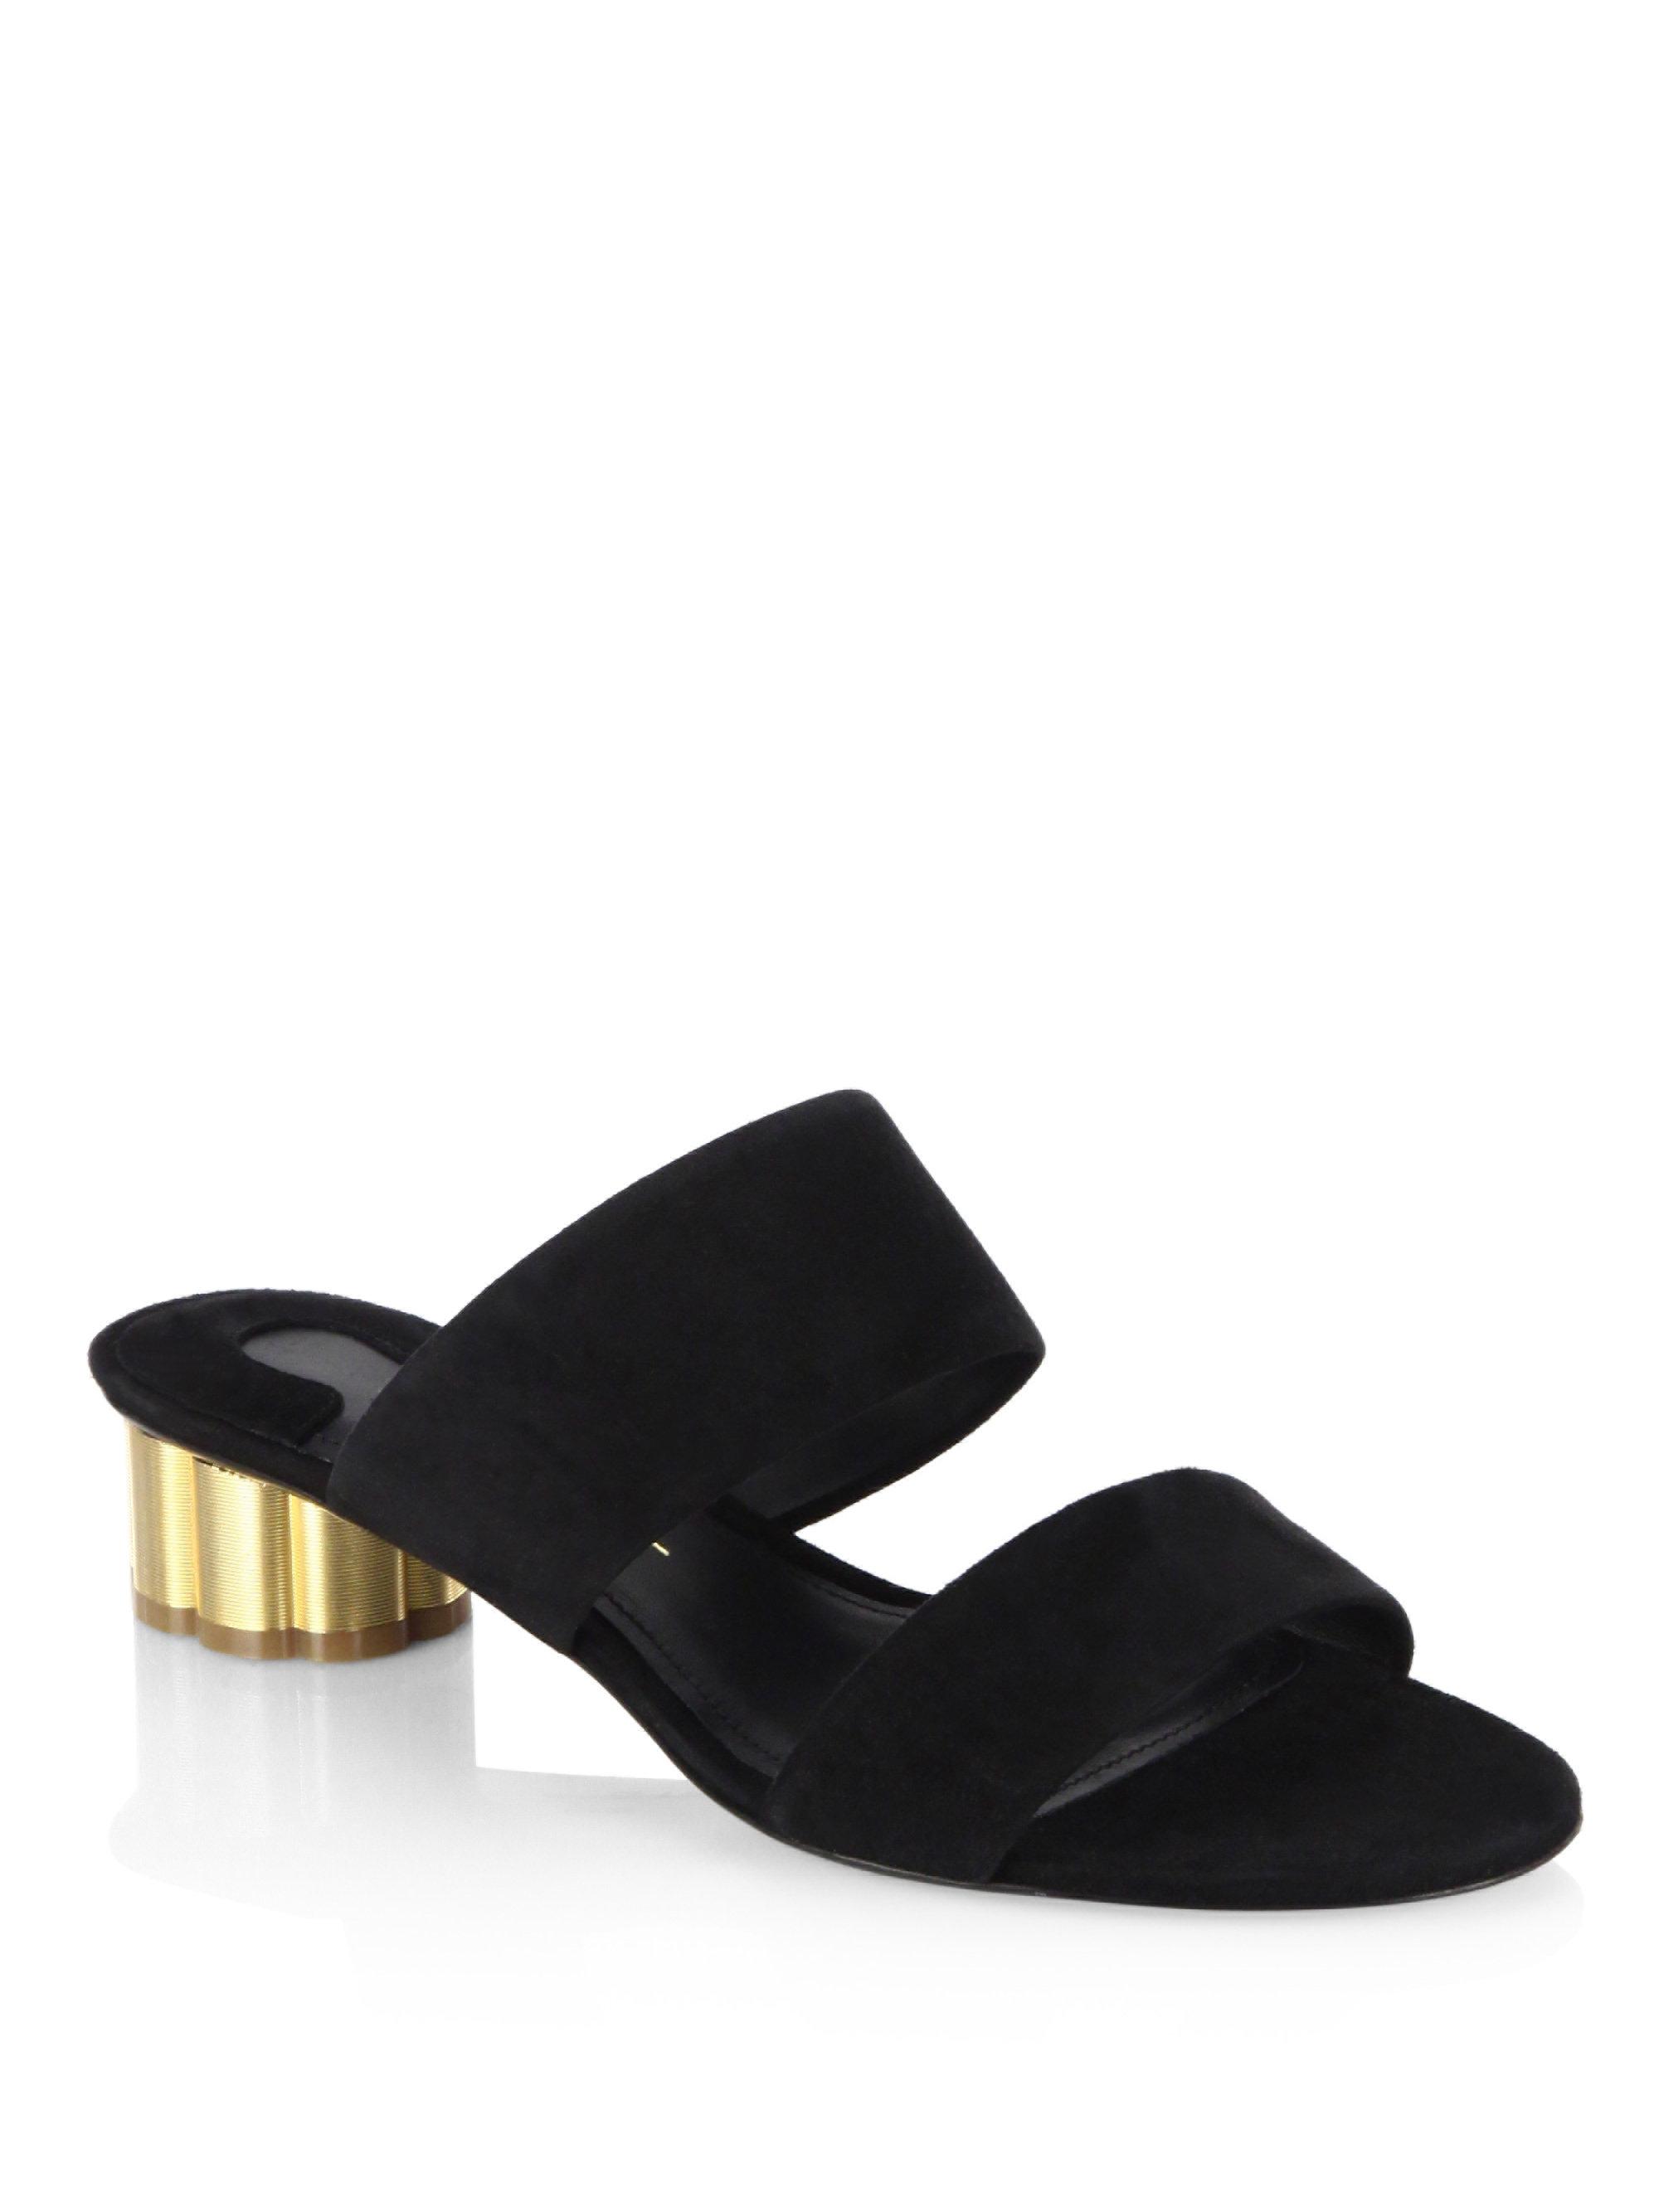 Ferragamo Belluno Flower Heel Suede Slide Sandals in Black | Lyst